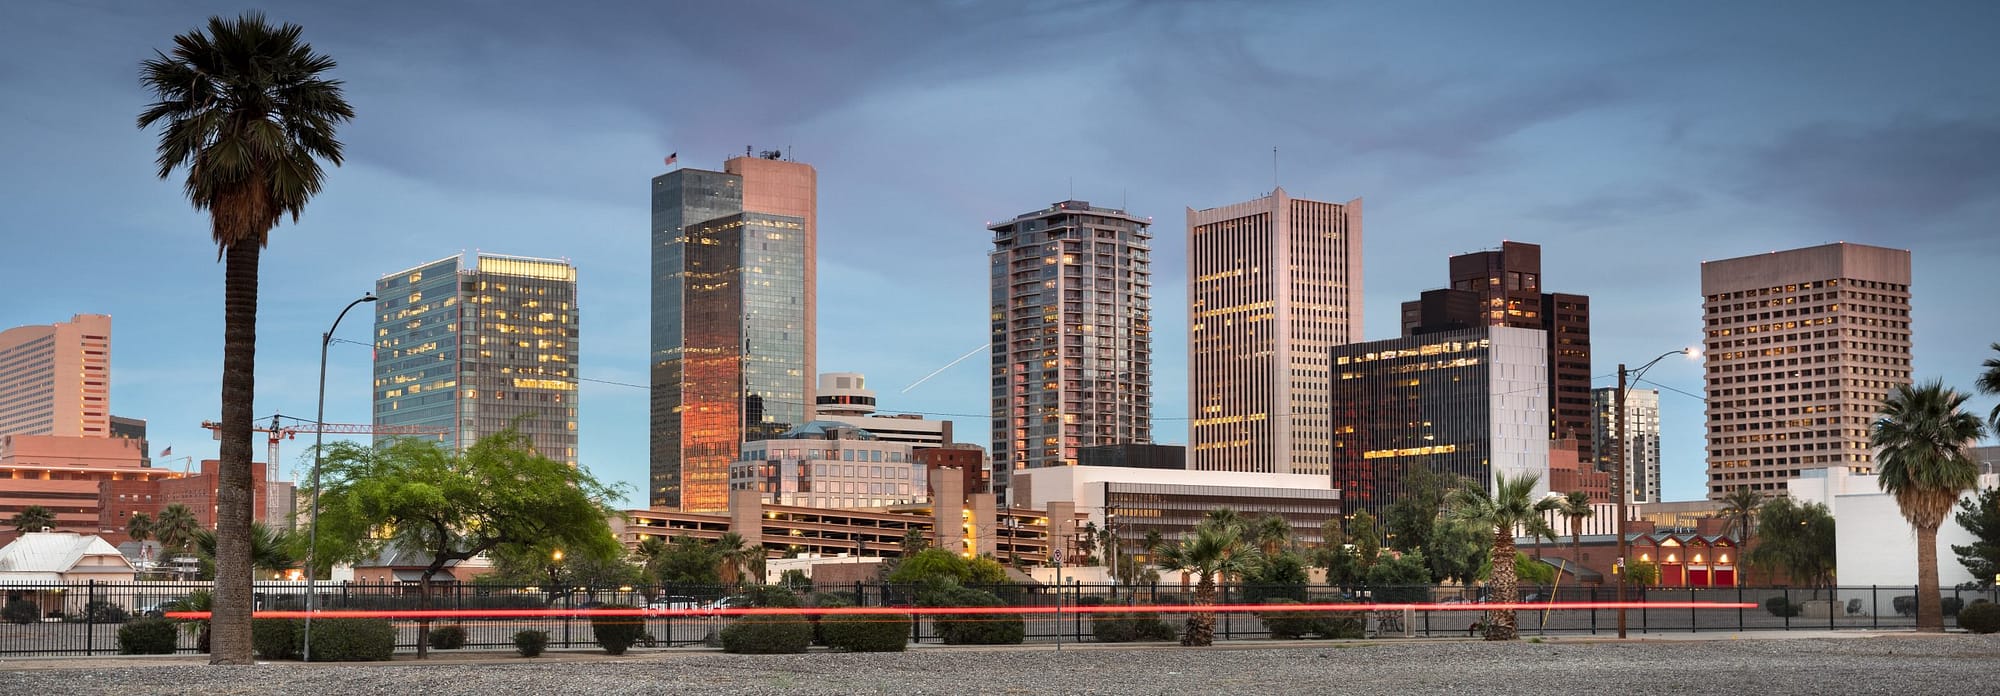 City View of Phoenix Arizona